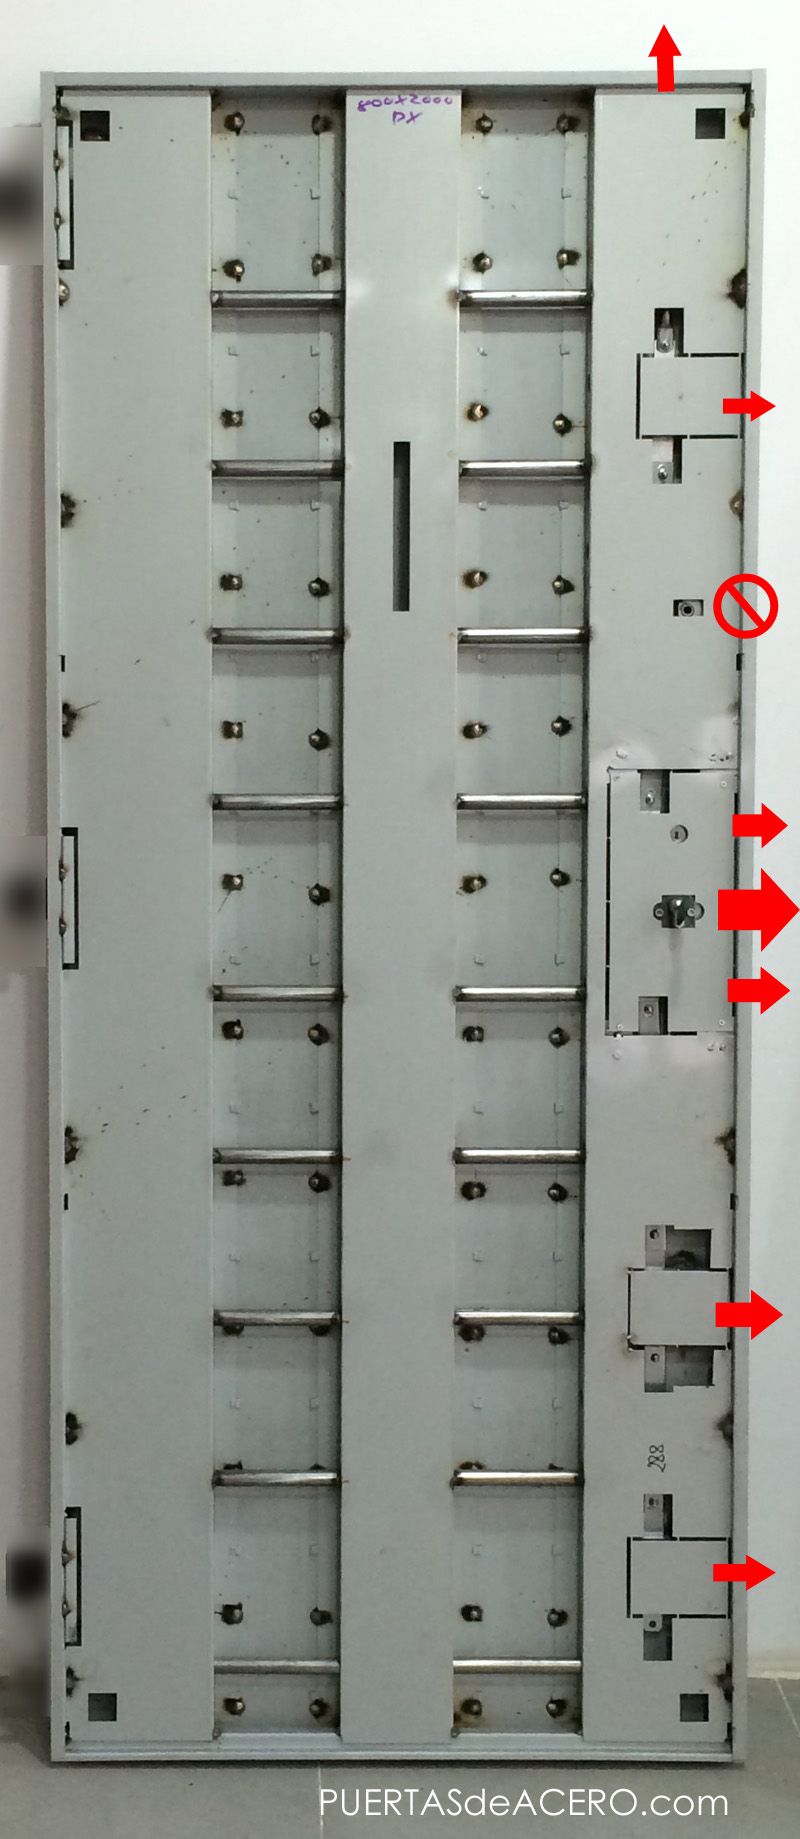 Puerta acorazada futura con 8 barras soldadas horizontales